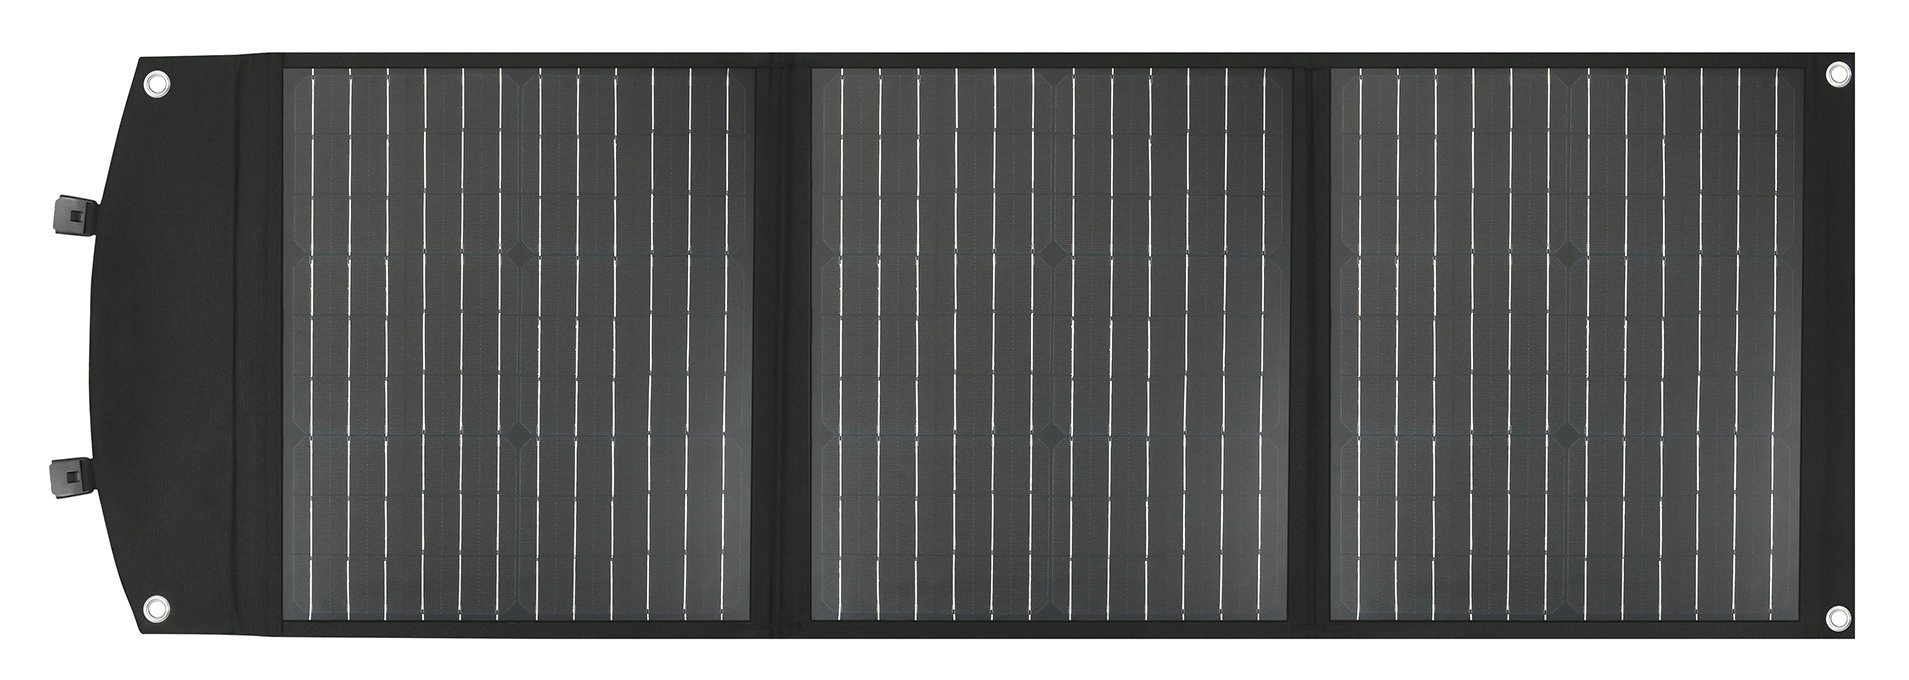 Zusammenklappbares Solarpanel-Ladegerät / monokristallines Solarpanel für Haustiere, 75 W, wasserdichtes Gewebe / intelligenter Ladechip